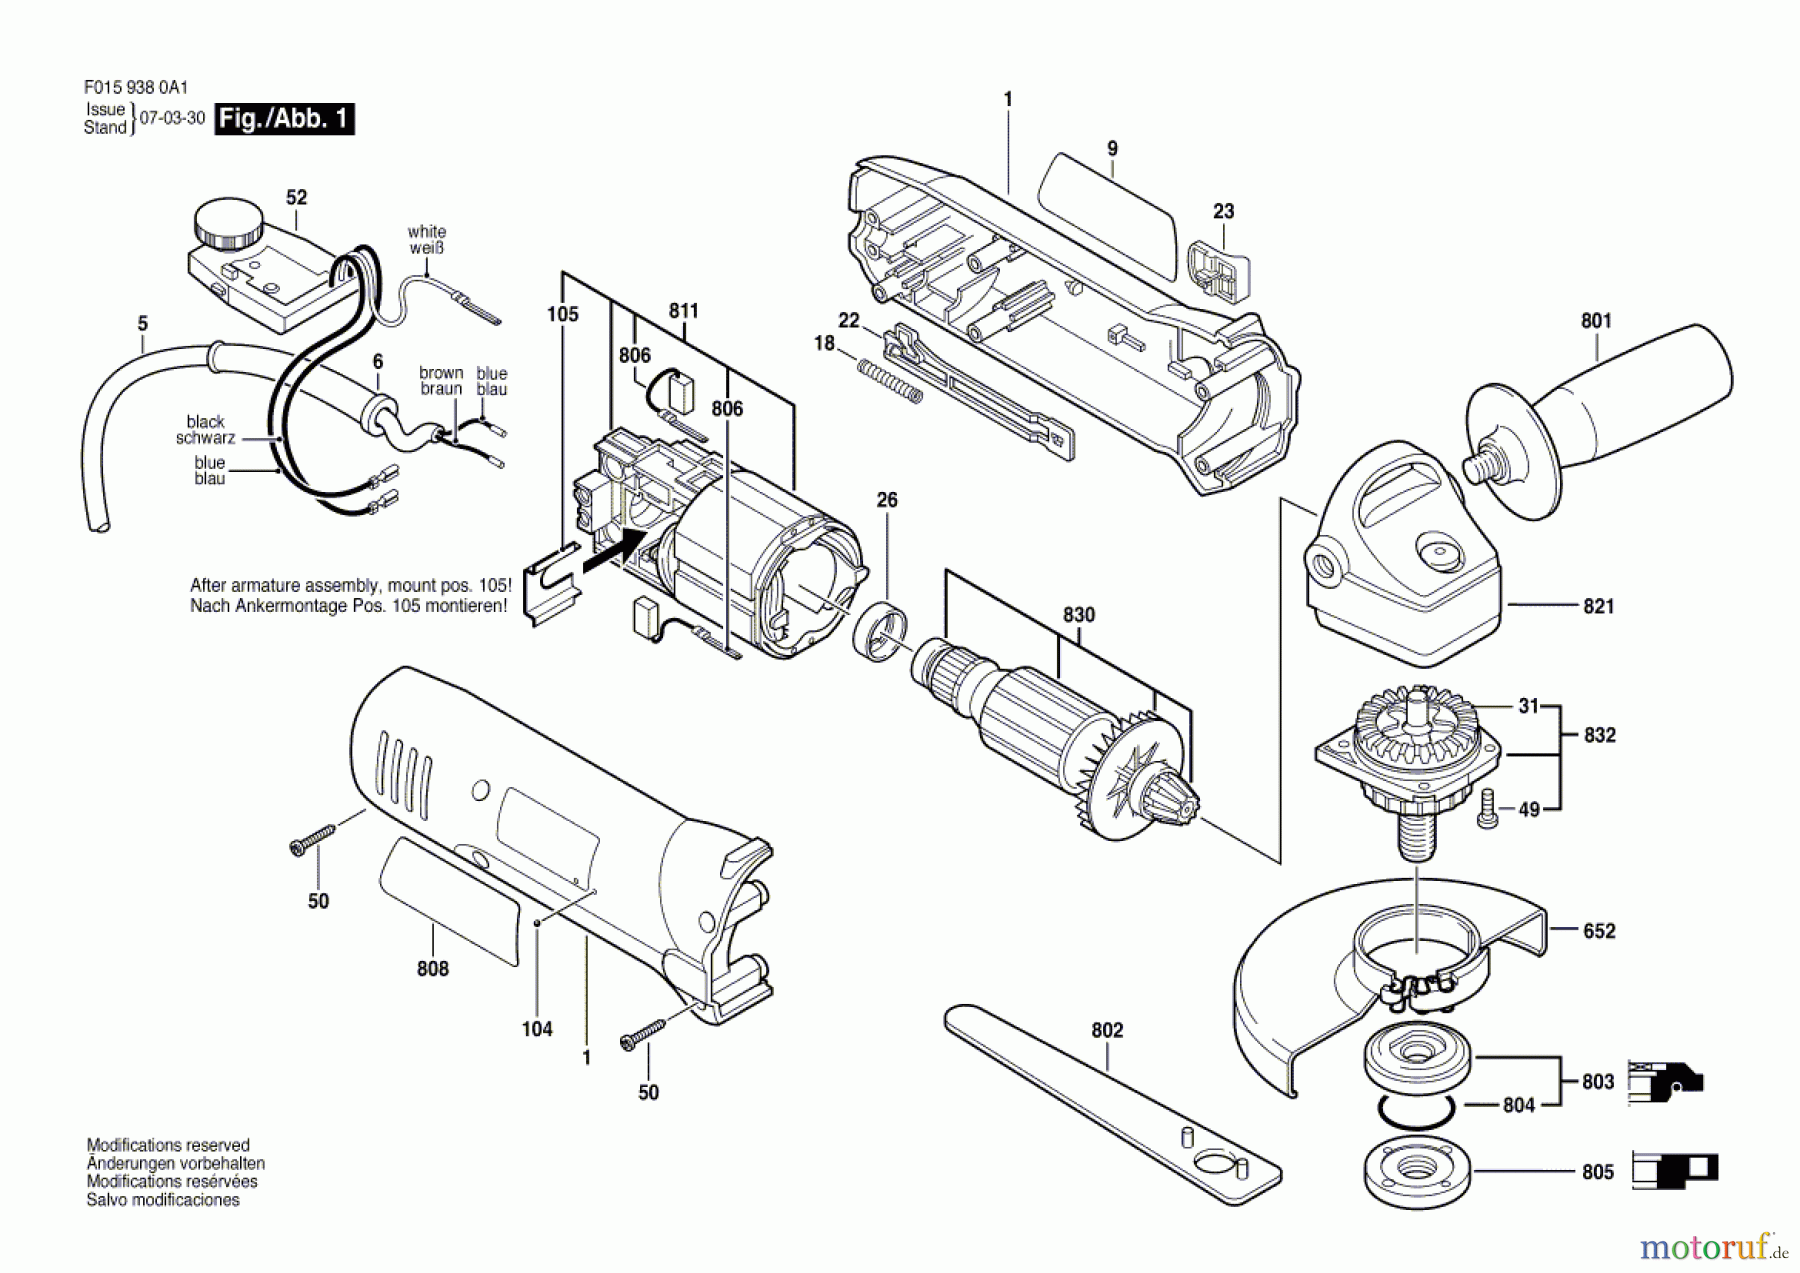  Bosch Werkzeug Winkelschleifer 9380 Seite 1